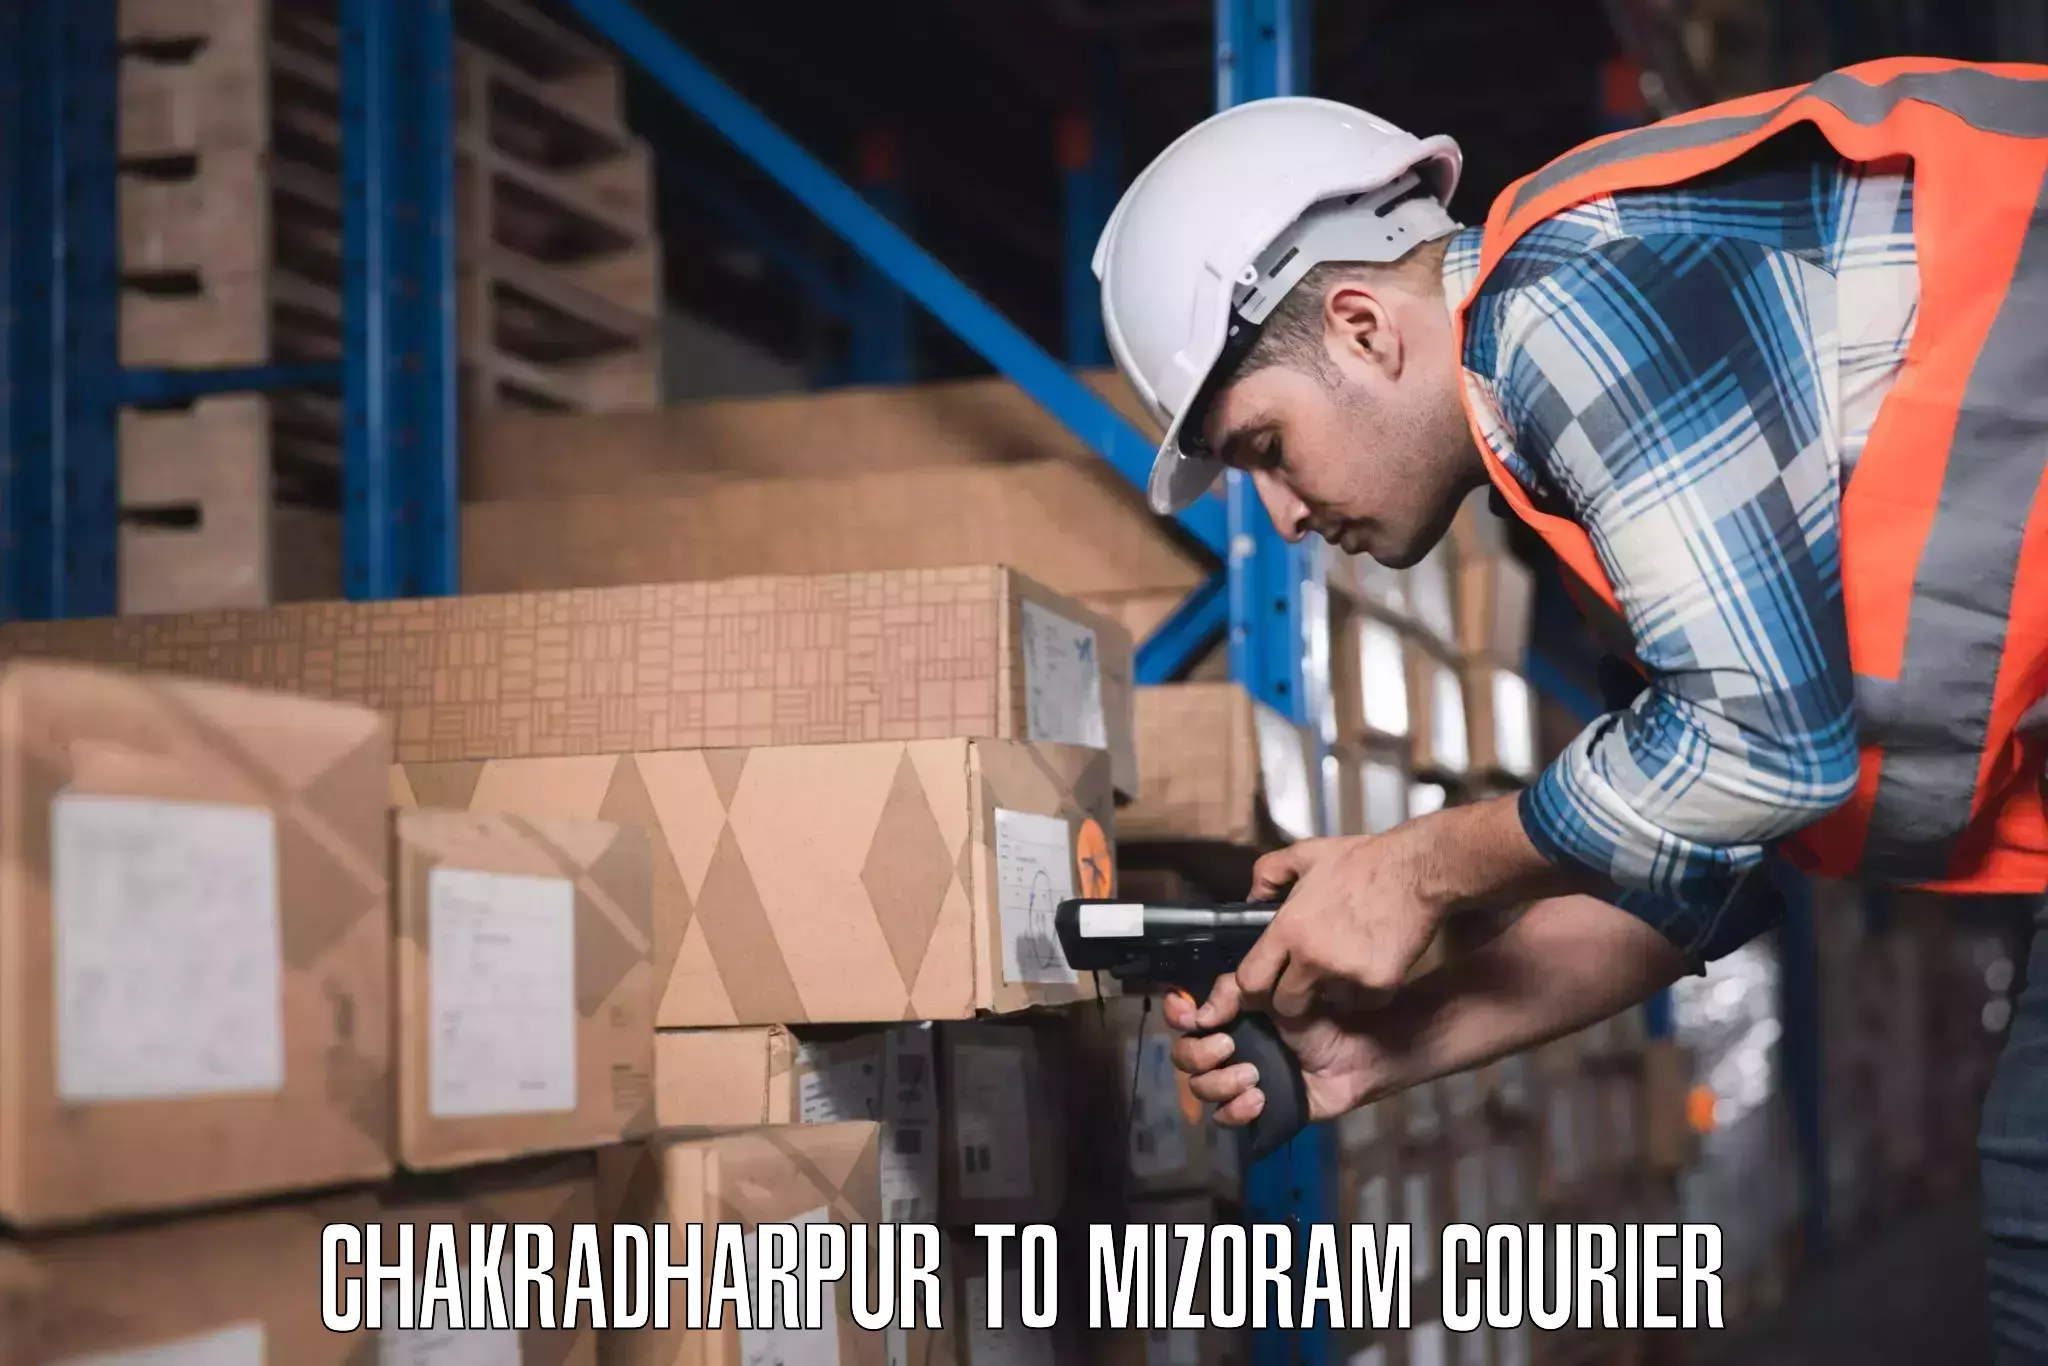 Luggage transport operations Chakradharpur to Mizoram